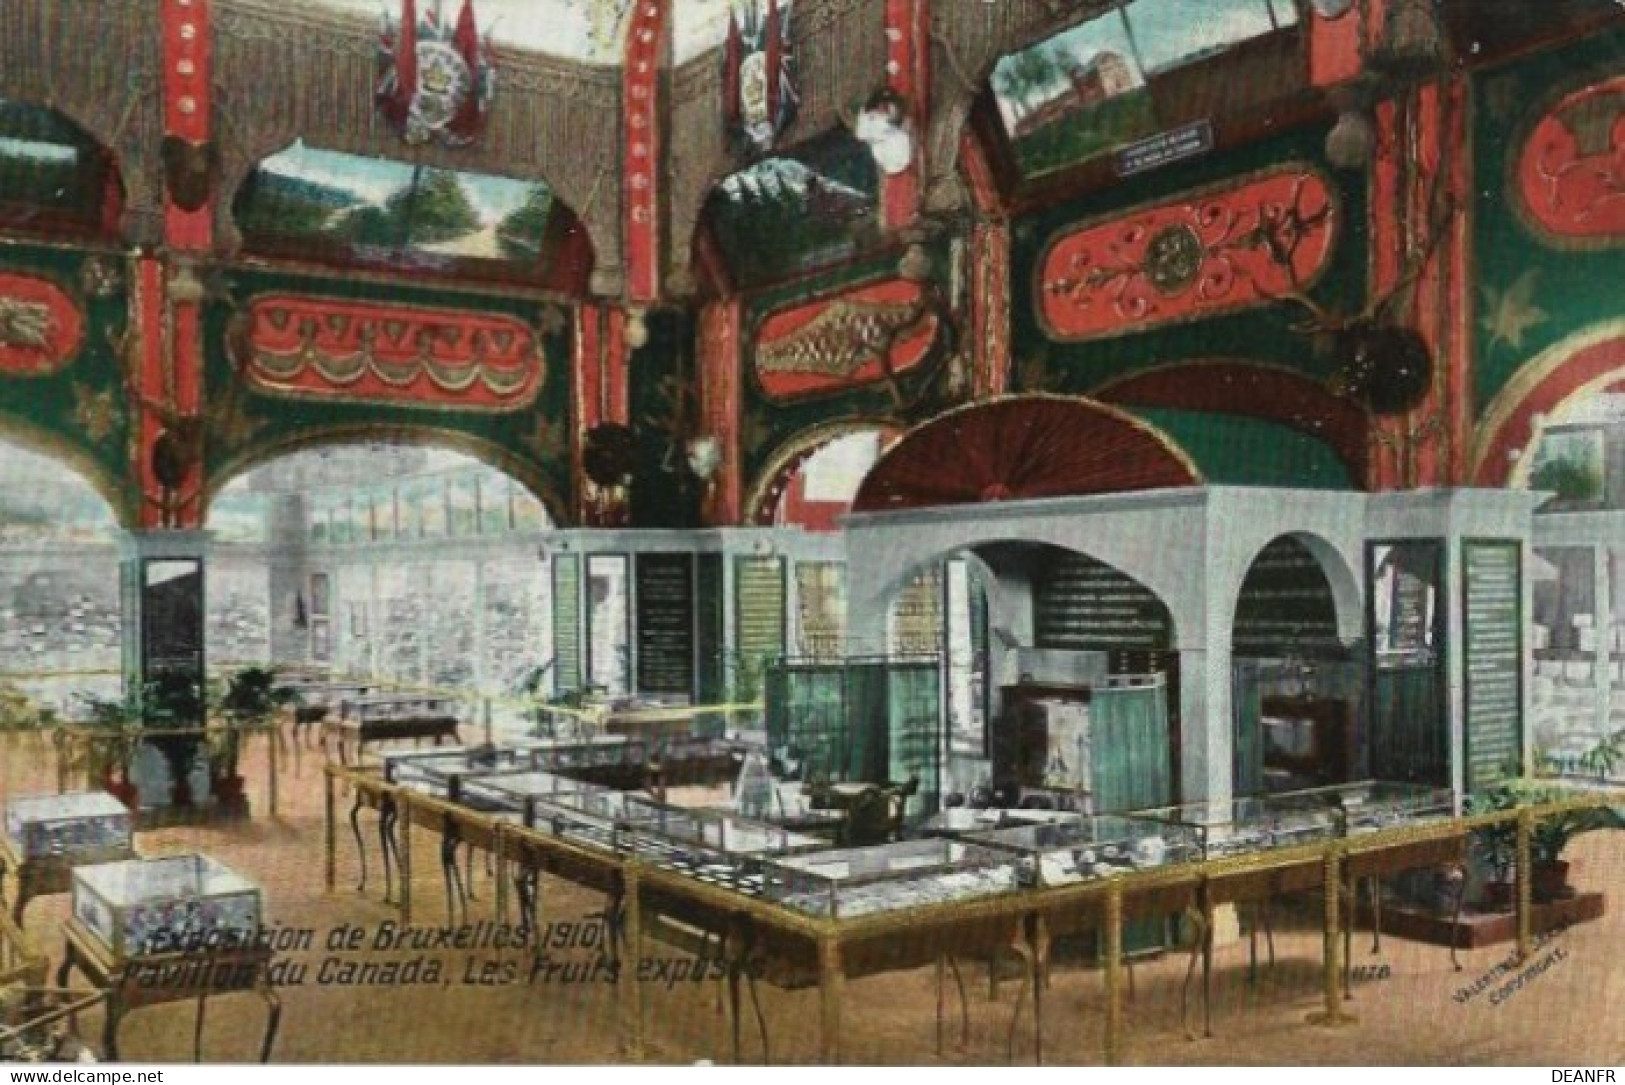 EXPOSITION De BRUXELLES 1910 : Pavillon Canada,Les Fruits Exposés. Carte Impeccable. - Expositions Universelles